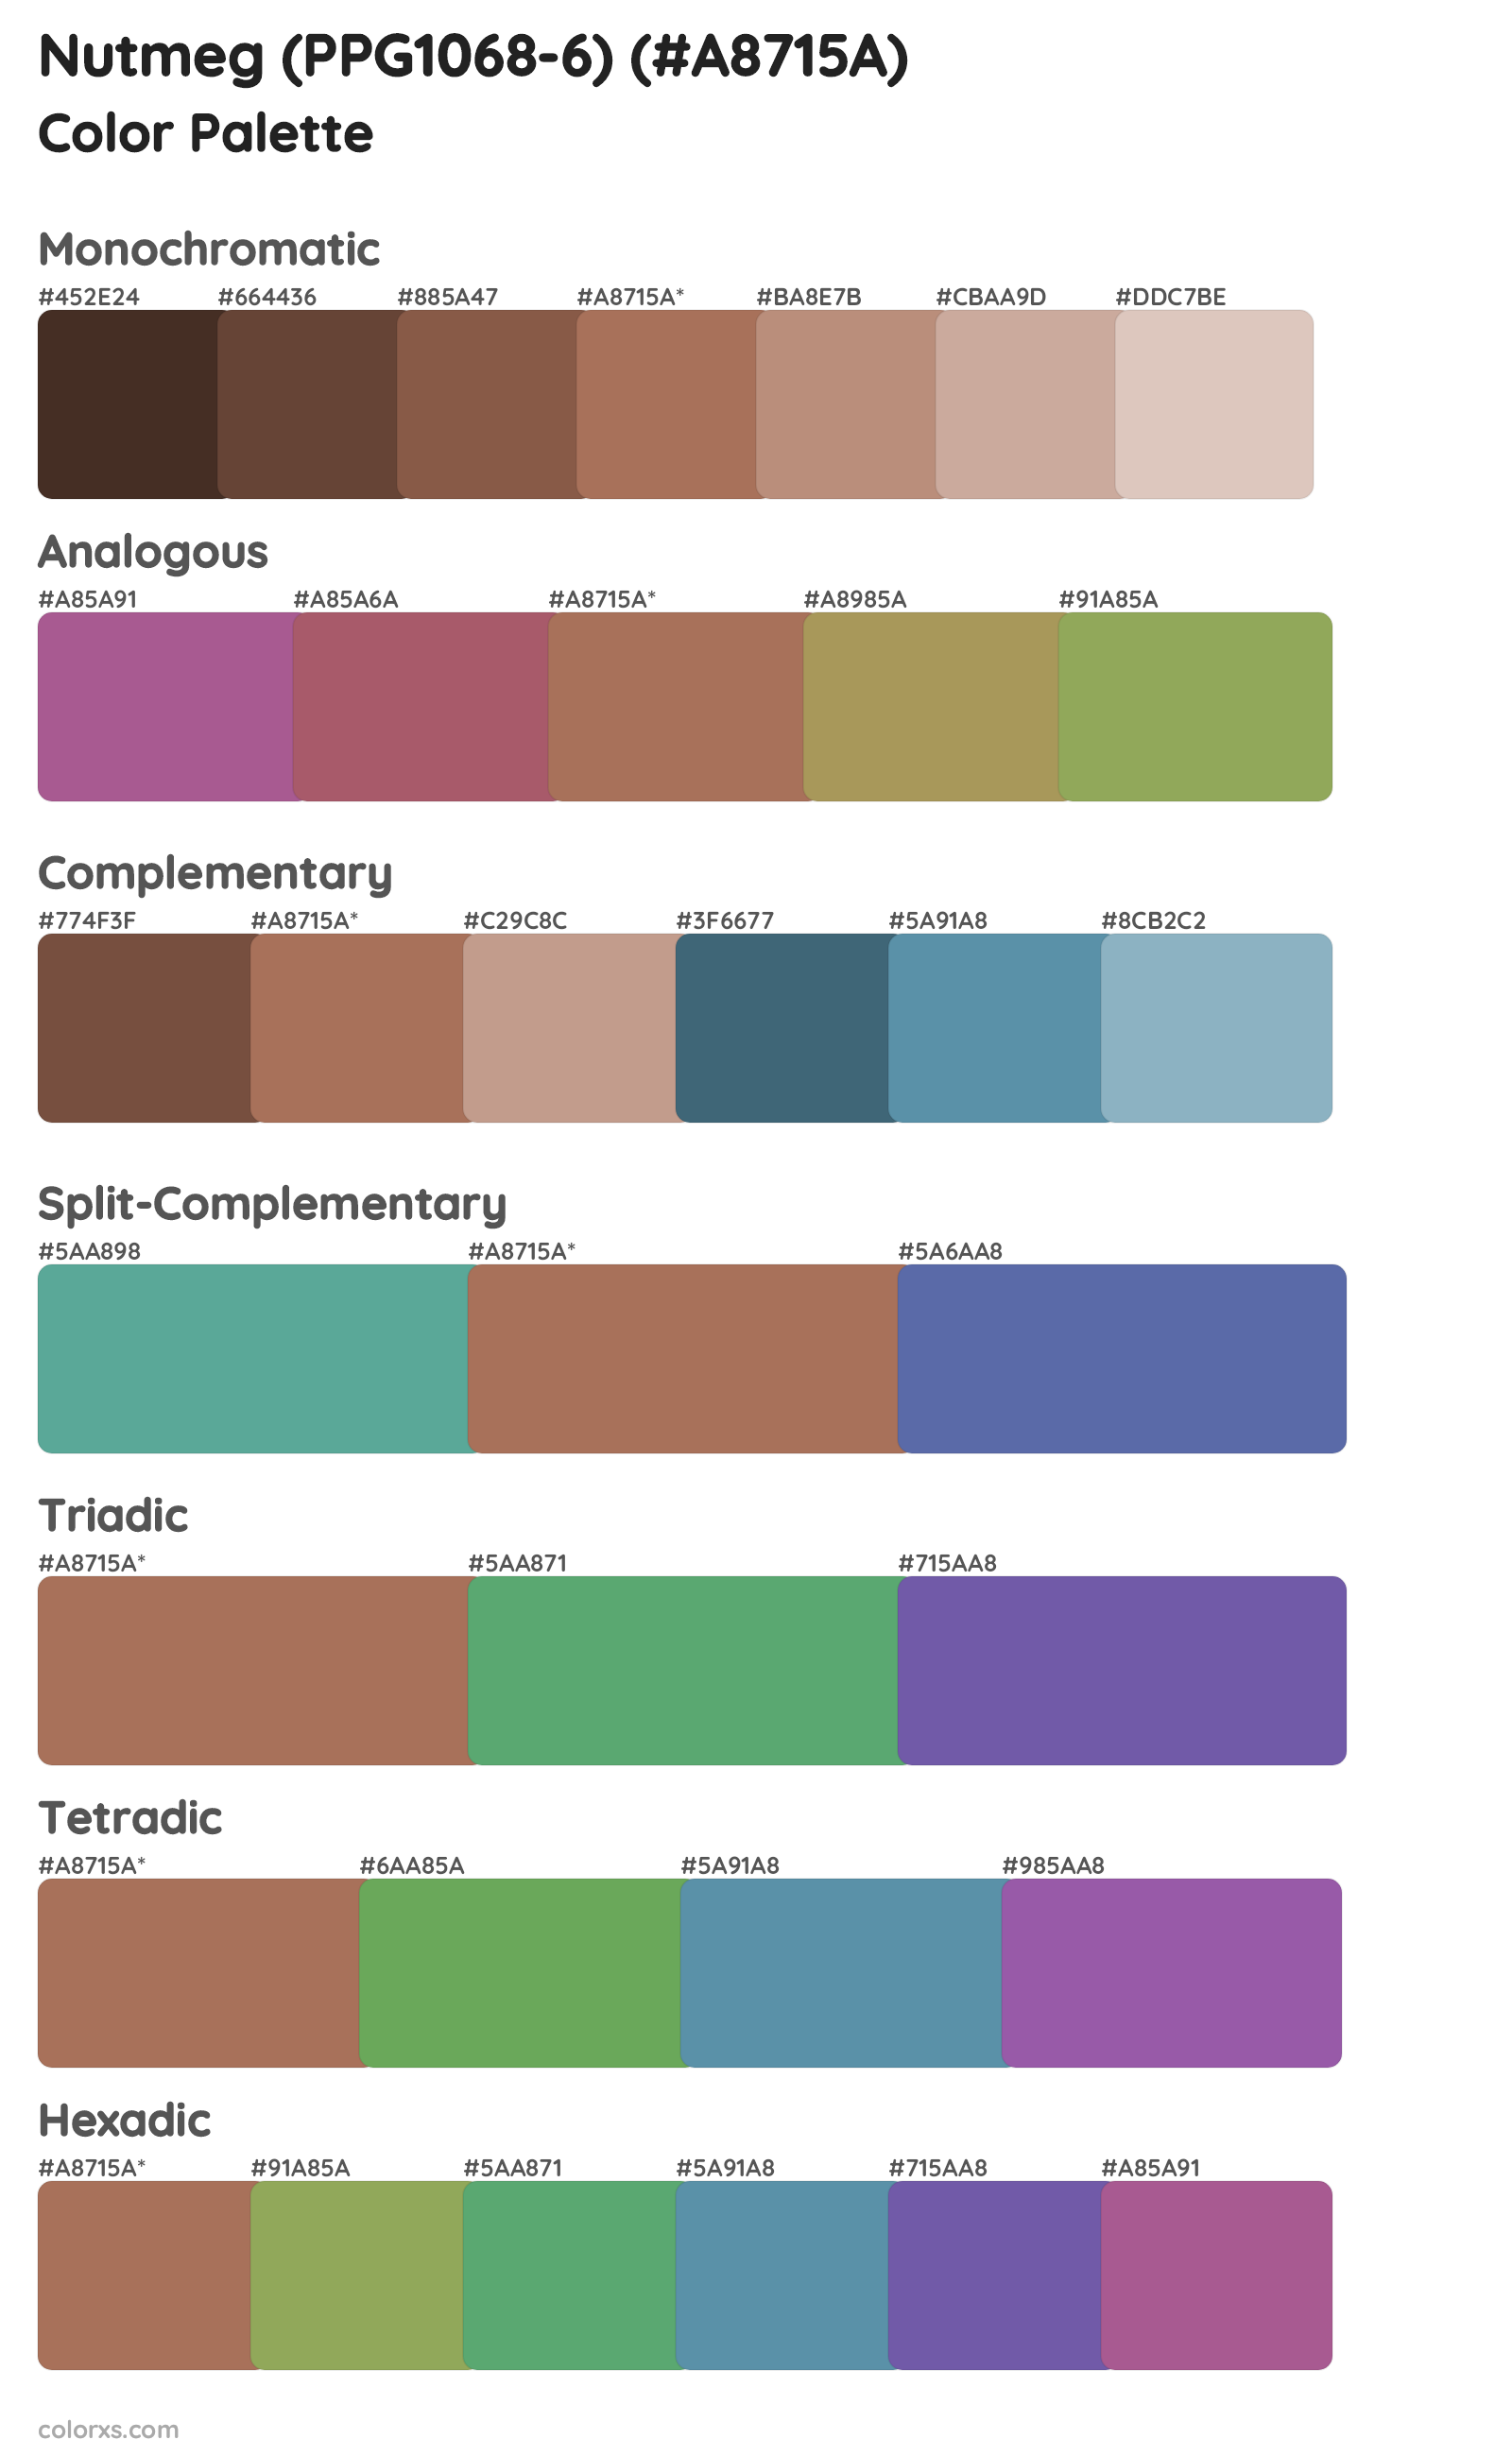 Nutmeg (PPG1068-6) Color Scheme Palettes